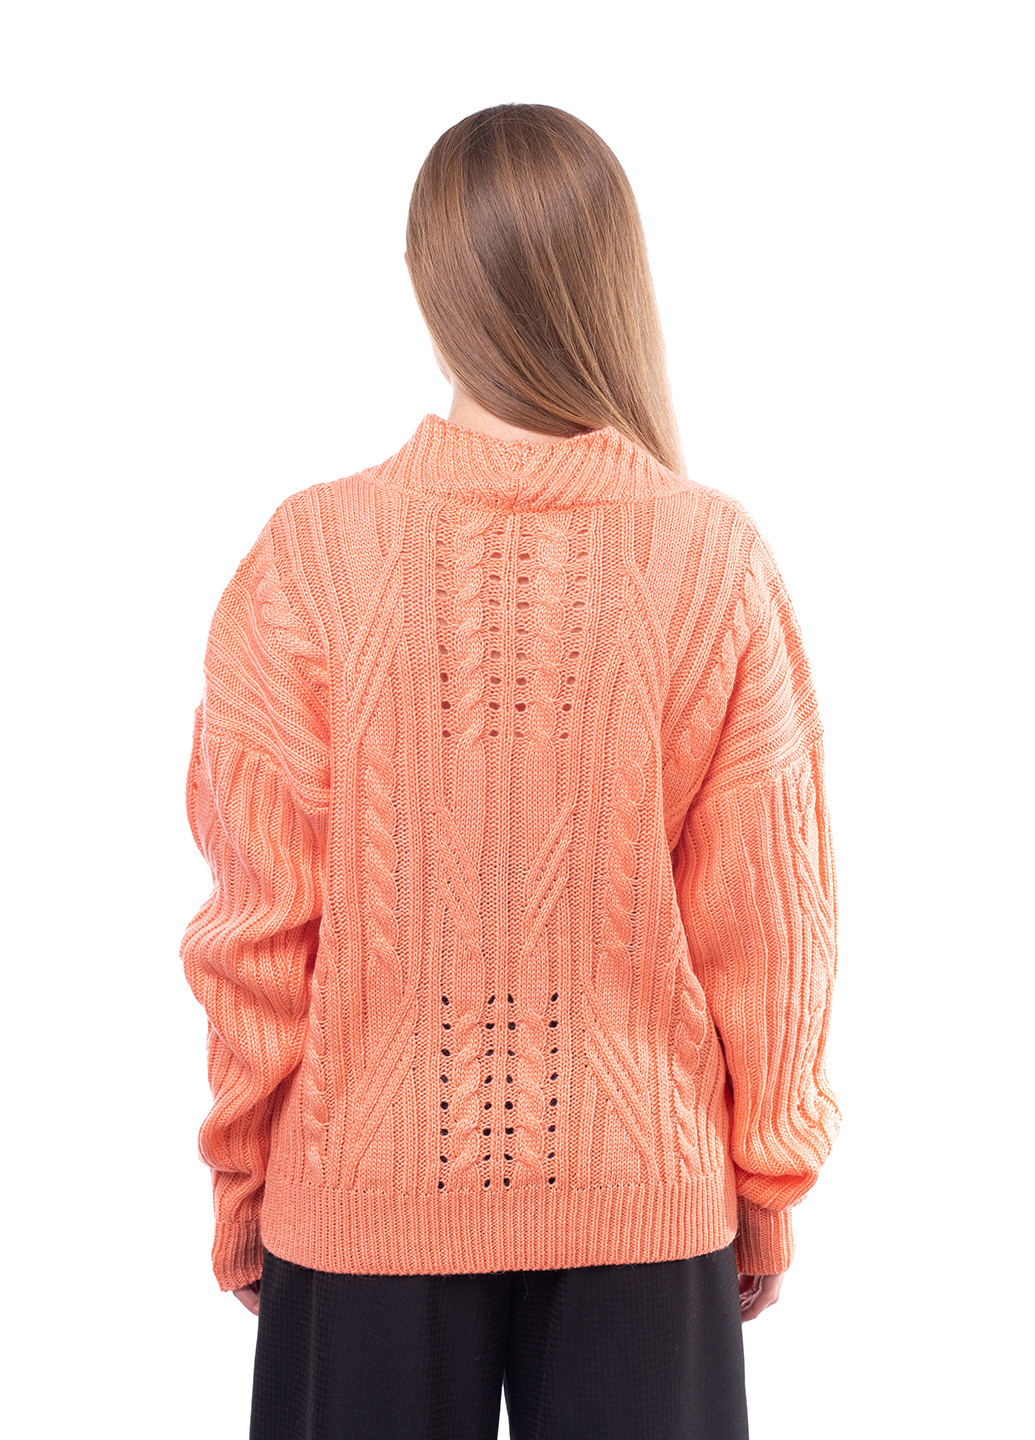 Персиковый демисезонный пуловер пуловер Bakhur